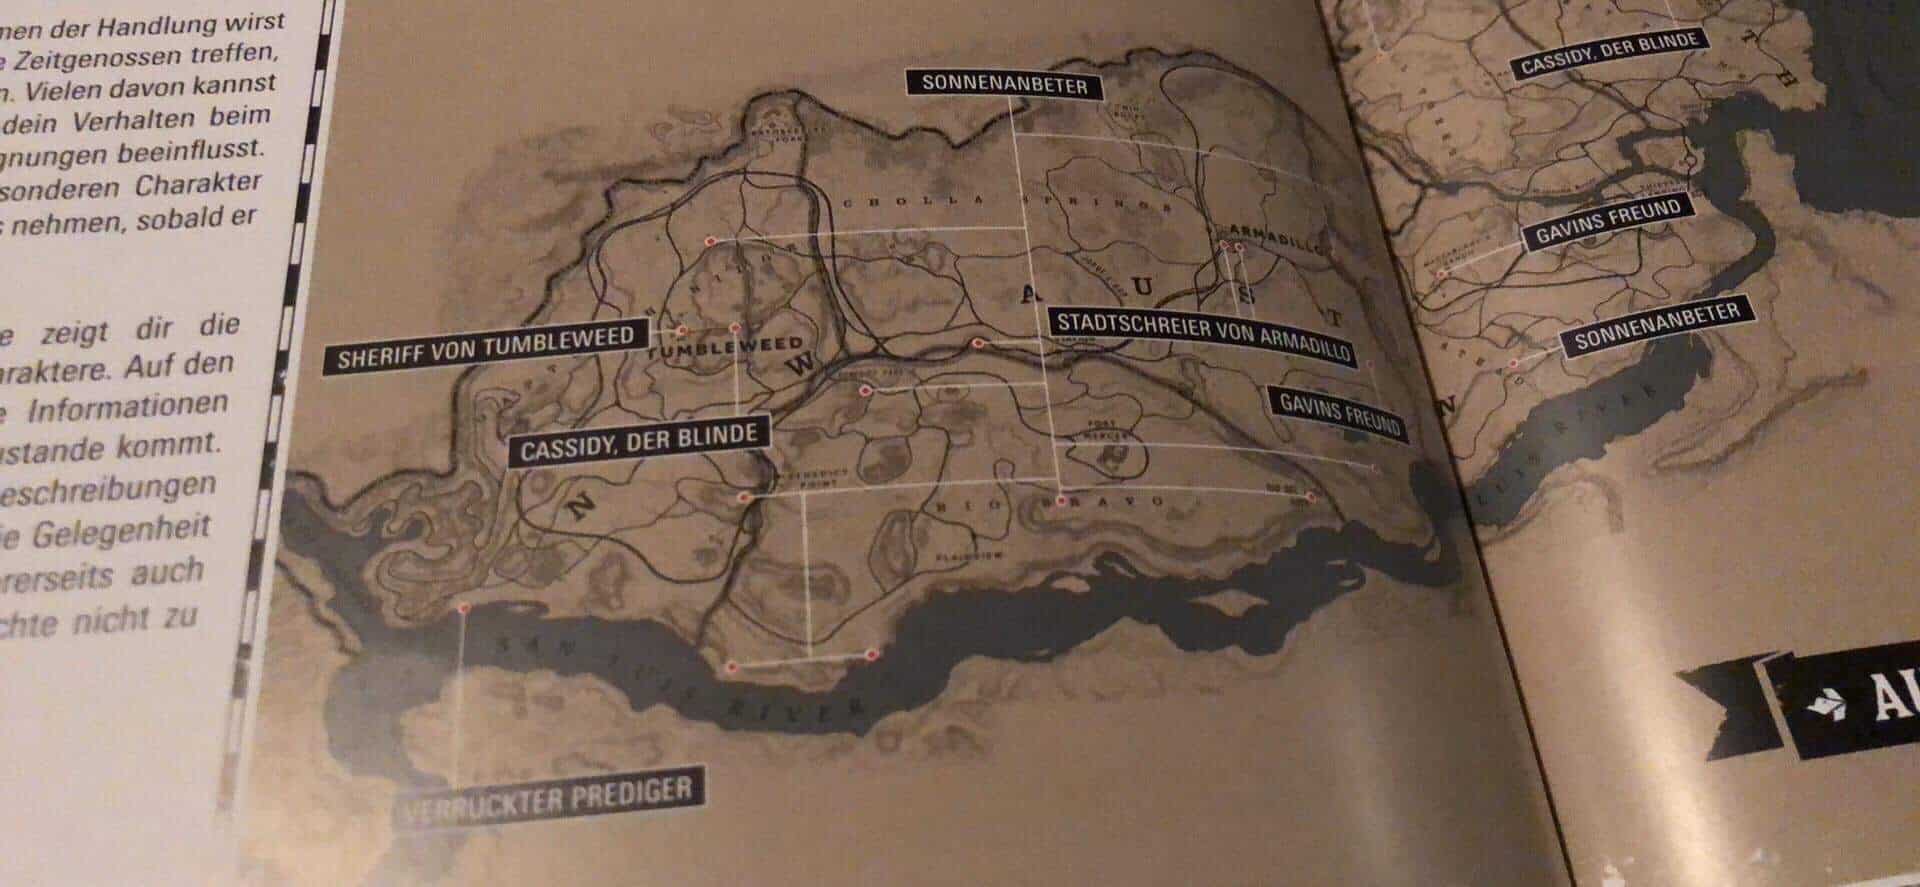 Como o mapa de Red Dead Redemption poderia encaixar nos EUA?